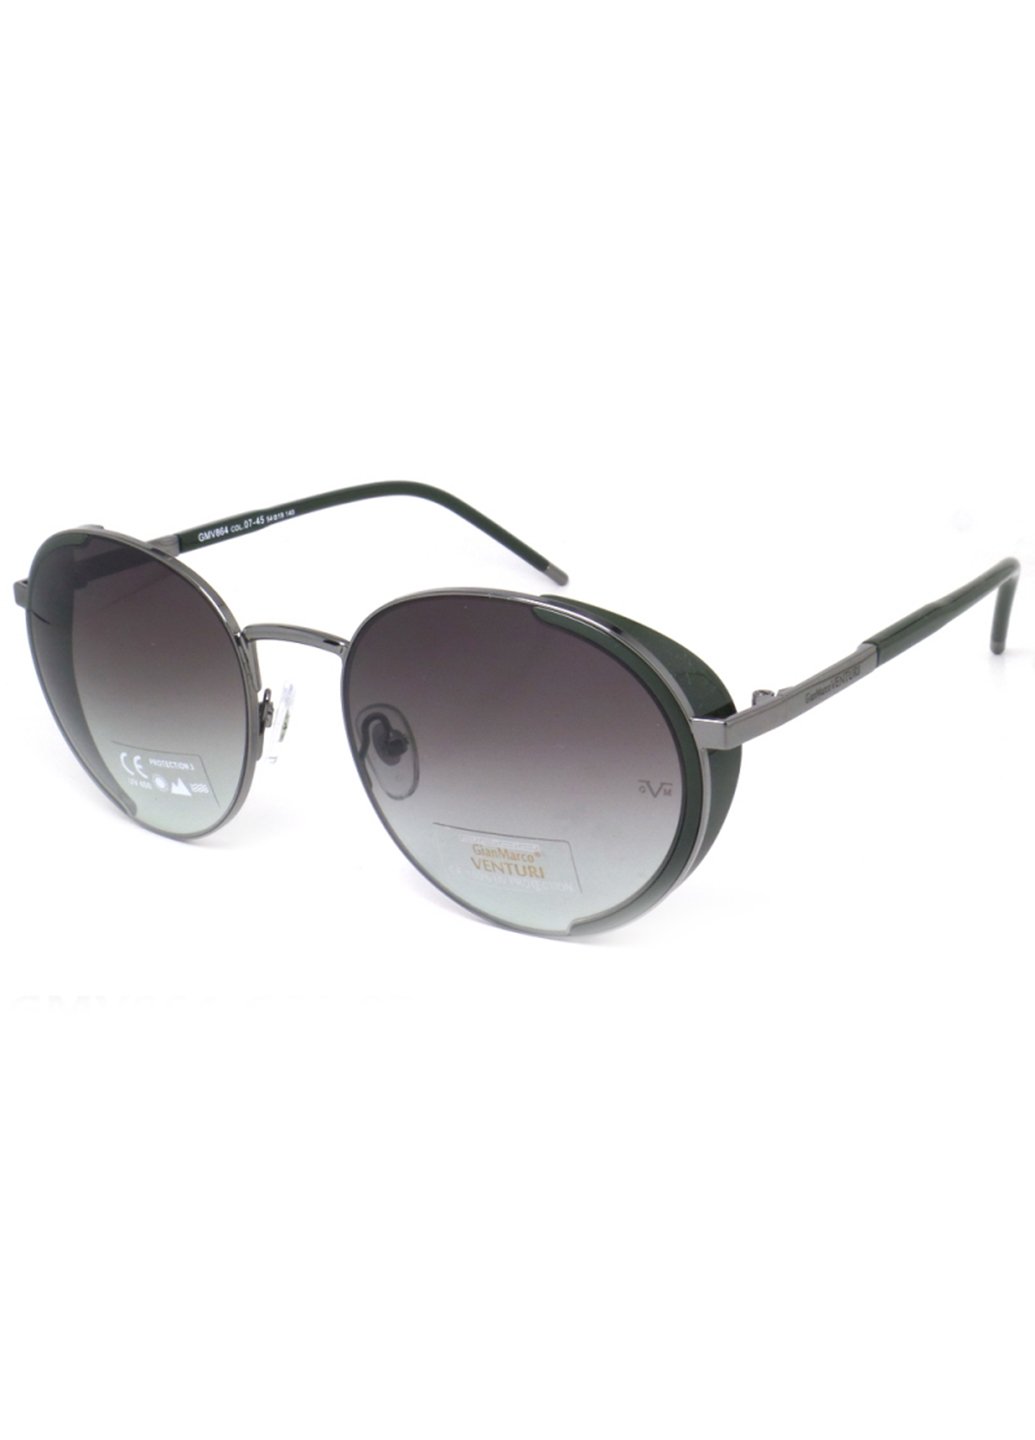 Купить Женские солнцезащитные очки Gian Marco VENTURI GMV864 130019 - Черный в интернет-магазине